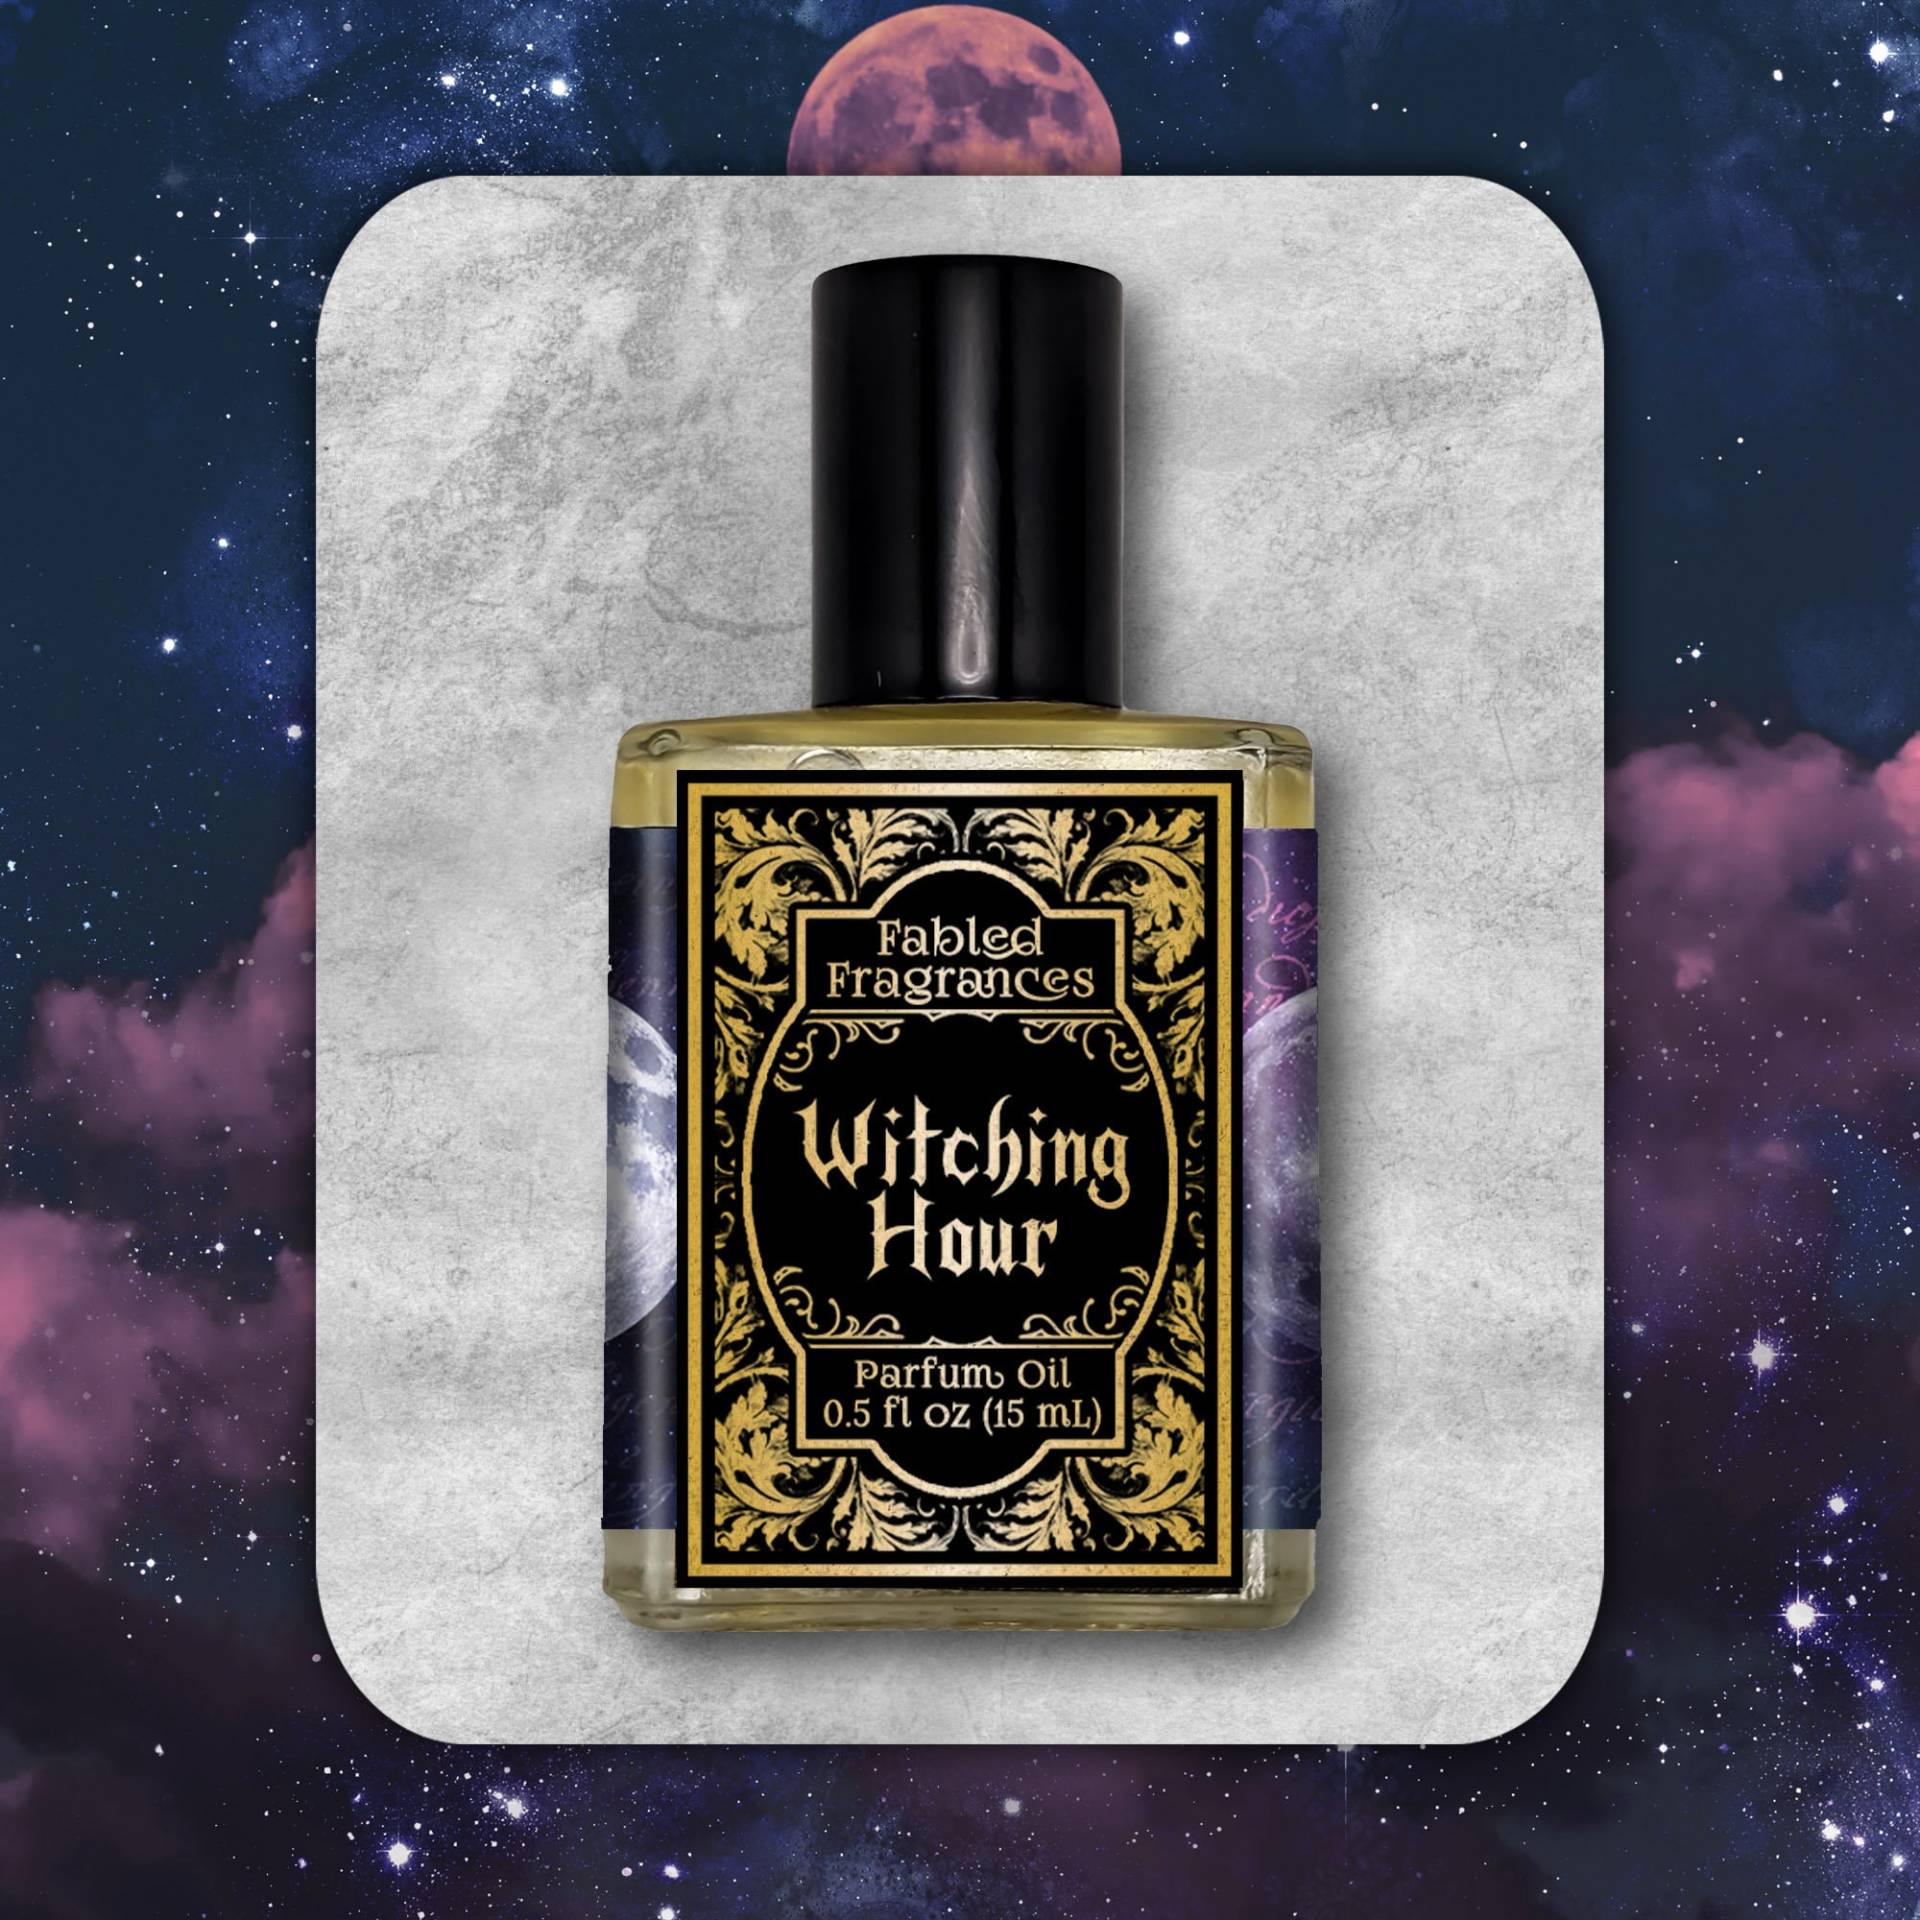 Witching Hour Parfümöl Mit Schwarzem Pfeffer, Piment, Rosmarin, Lorbeer, Weihrauch, Rauch, Narde, Kopal, Pulver, Tat 6-8 Biz Days von FabledFragrances